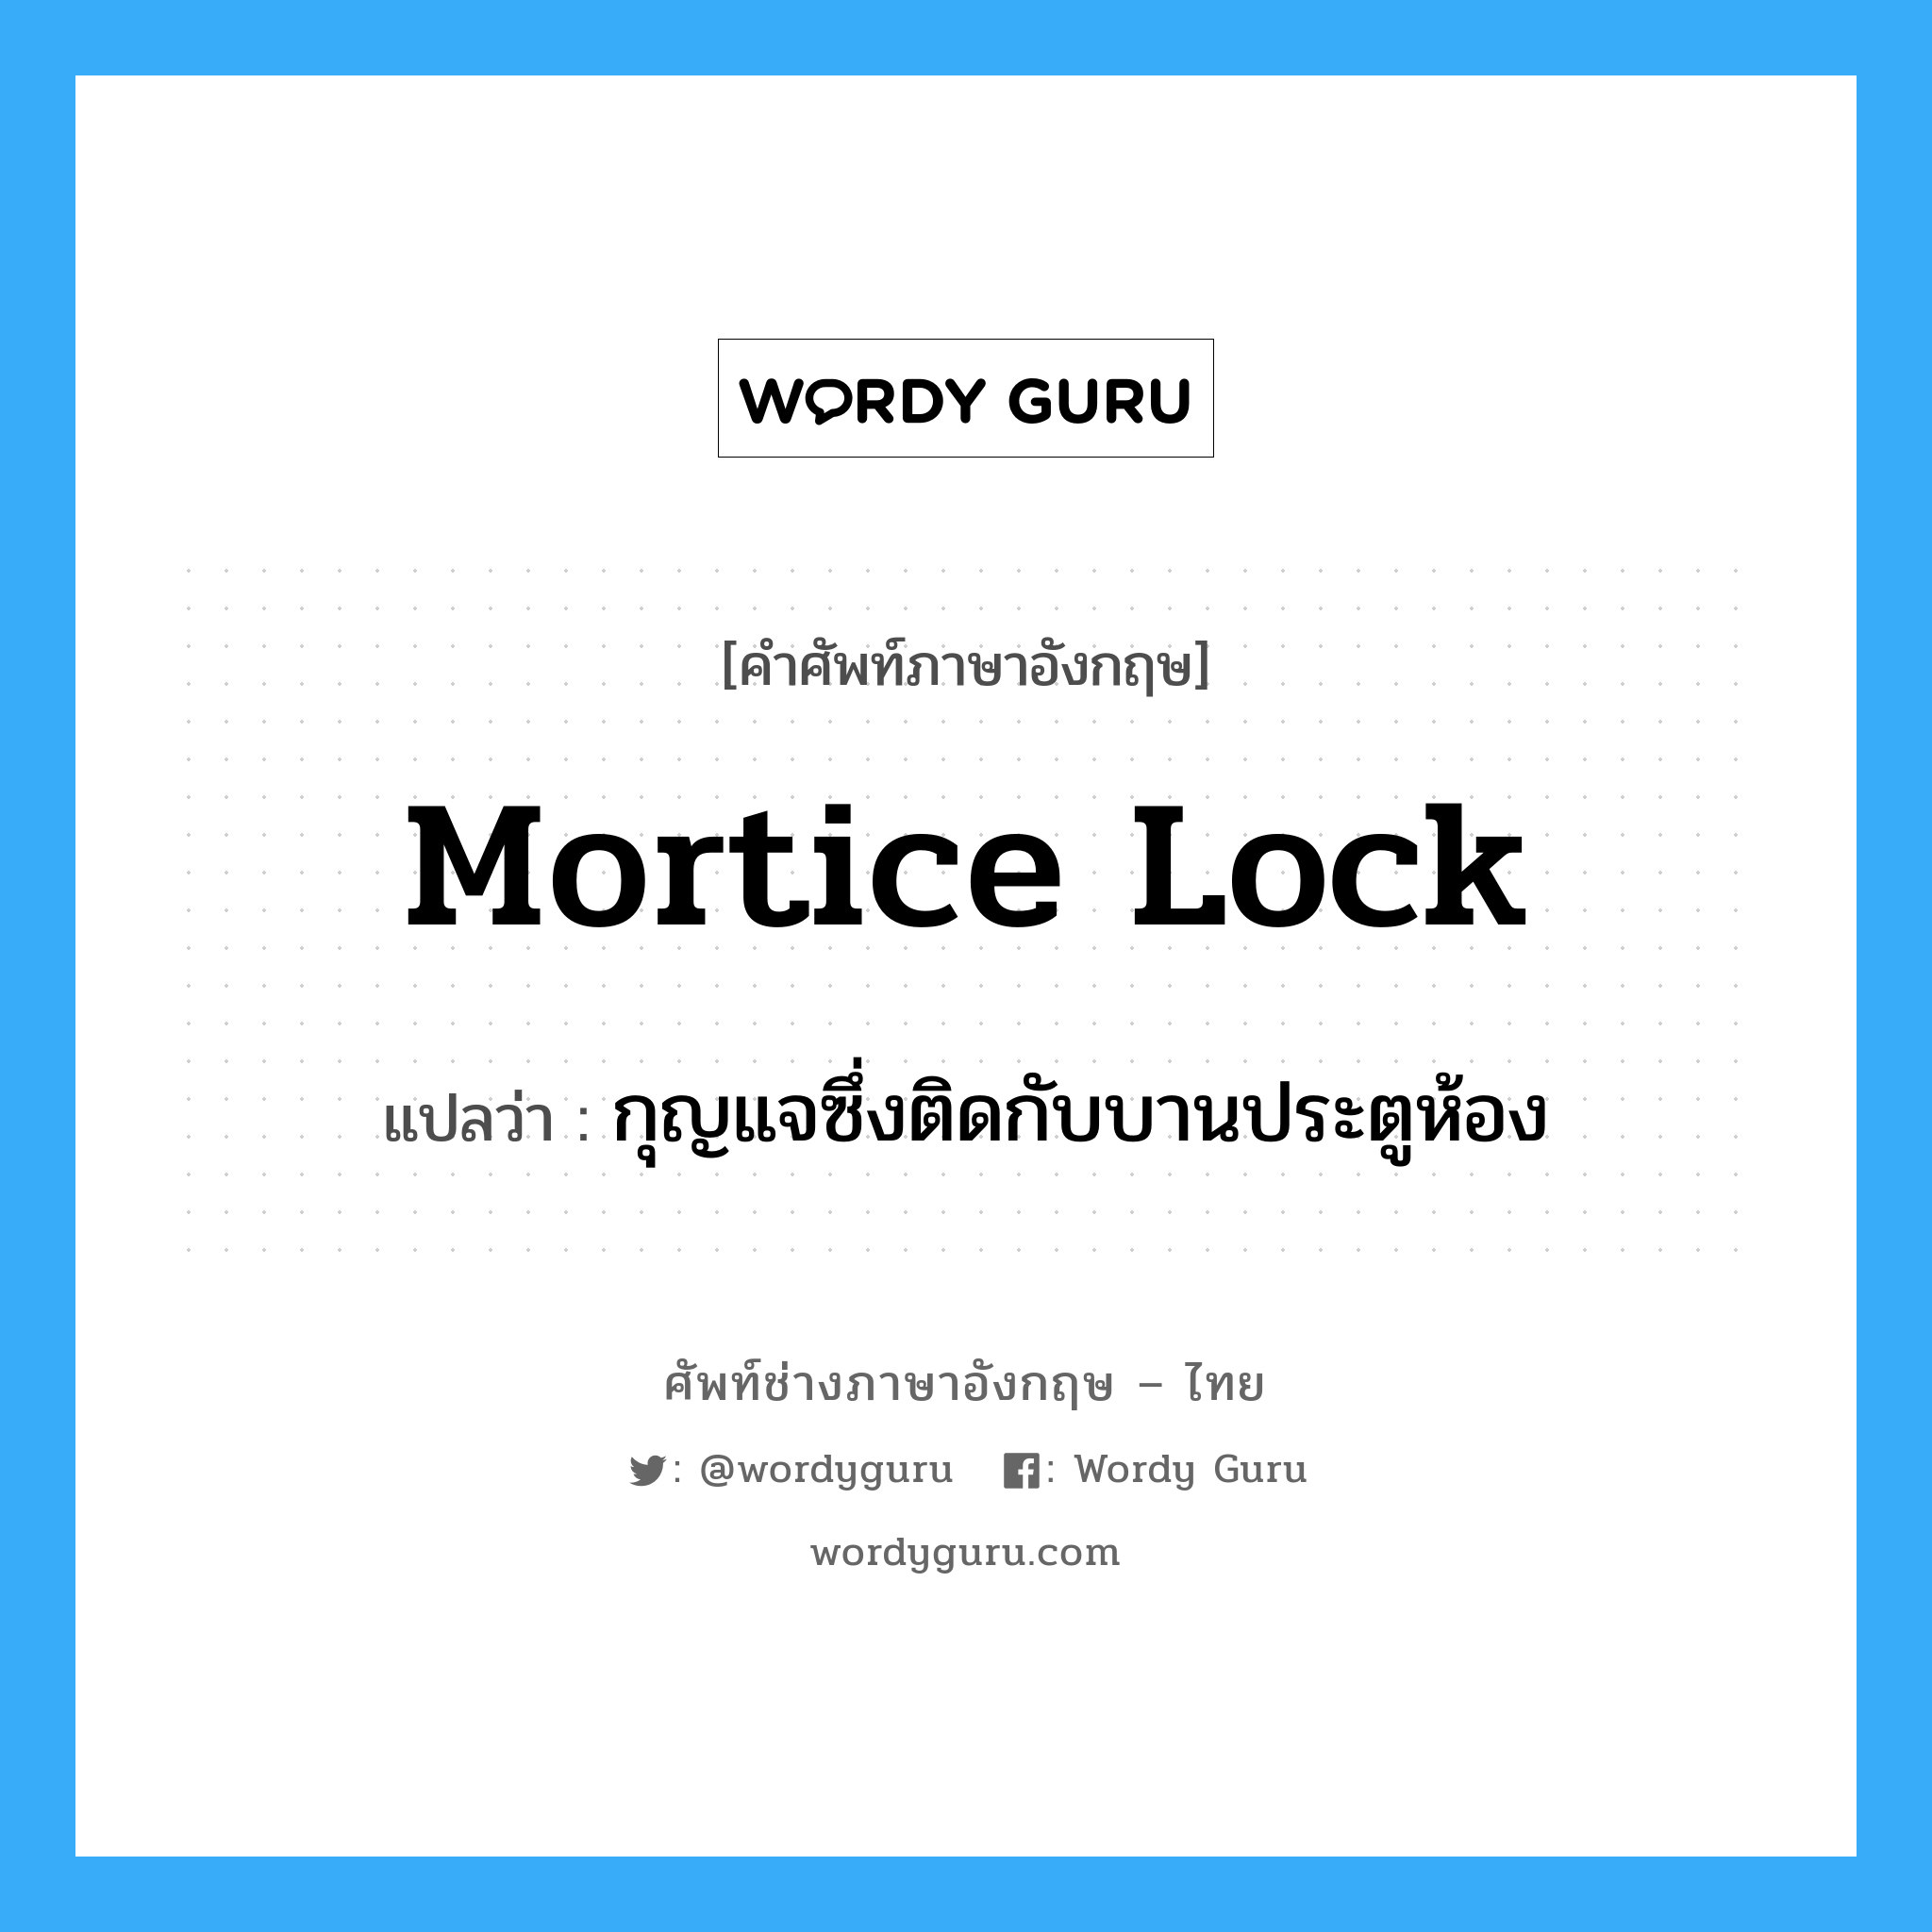 กุญแจซึ่งติดกับบานประตูห้อง ภาษาอังกฤษ?, คำศัพท์ช่างภาษาอังกฤษ - ไทย กุญแจซึ่งติดกับบานประตูห้อง คำศัพท์ภาษาอังกฤษ กุญแจซึ่งติดกับบานประตูห้อง แปลว่า mortice lock